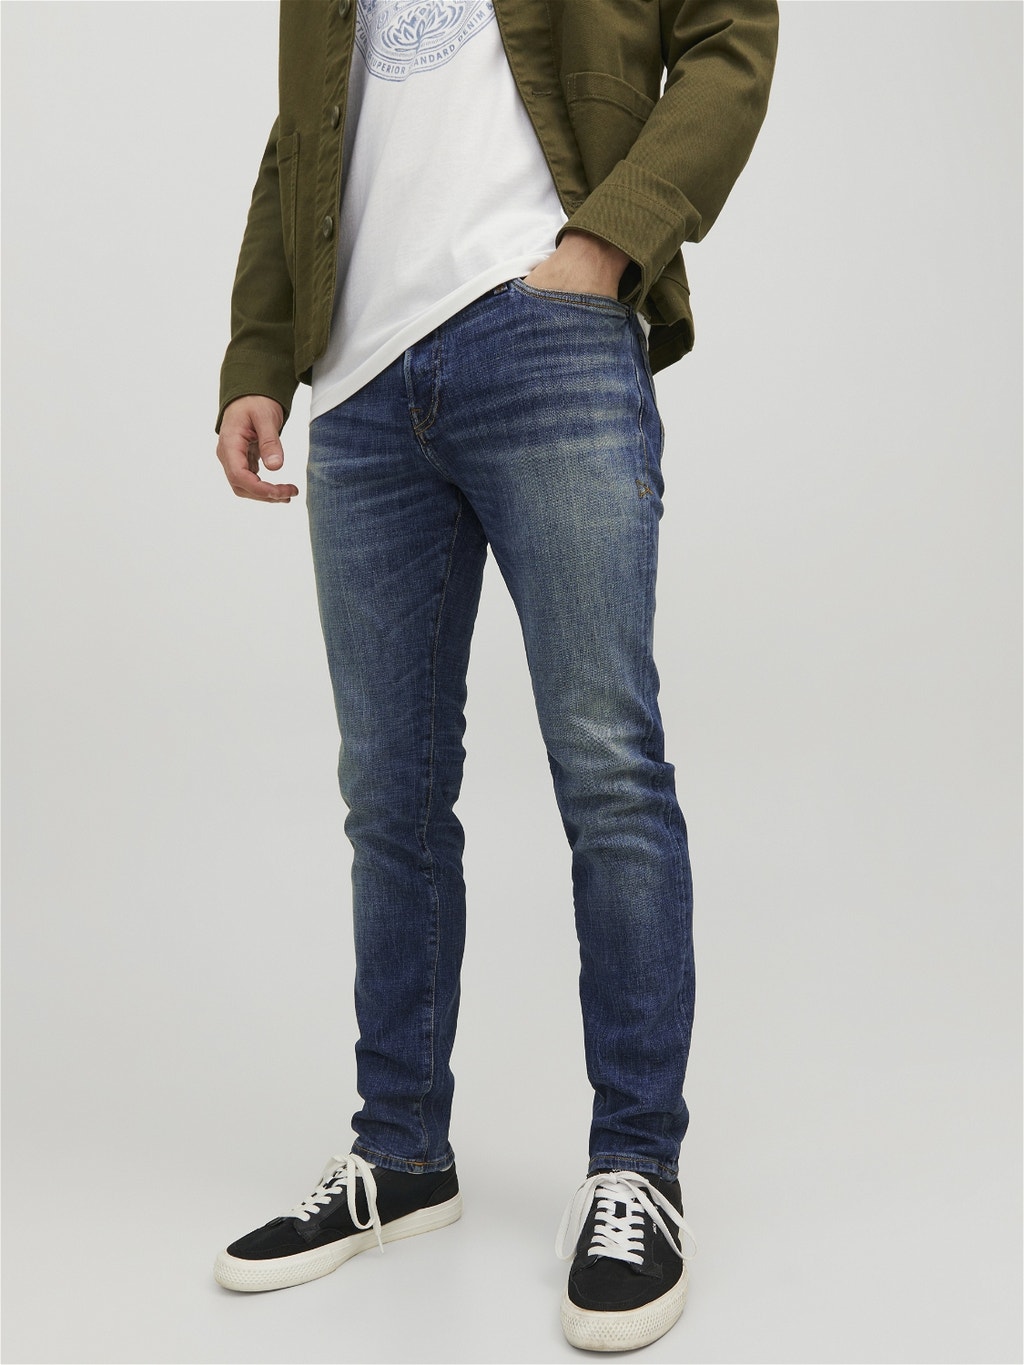 lila veronderstellen kraan Tim Vintage CJ 336 Slim/straight fit jeans with 20% discount! | Jack & Jones ®